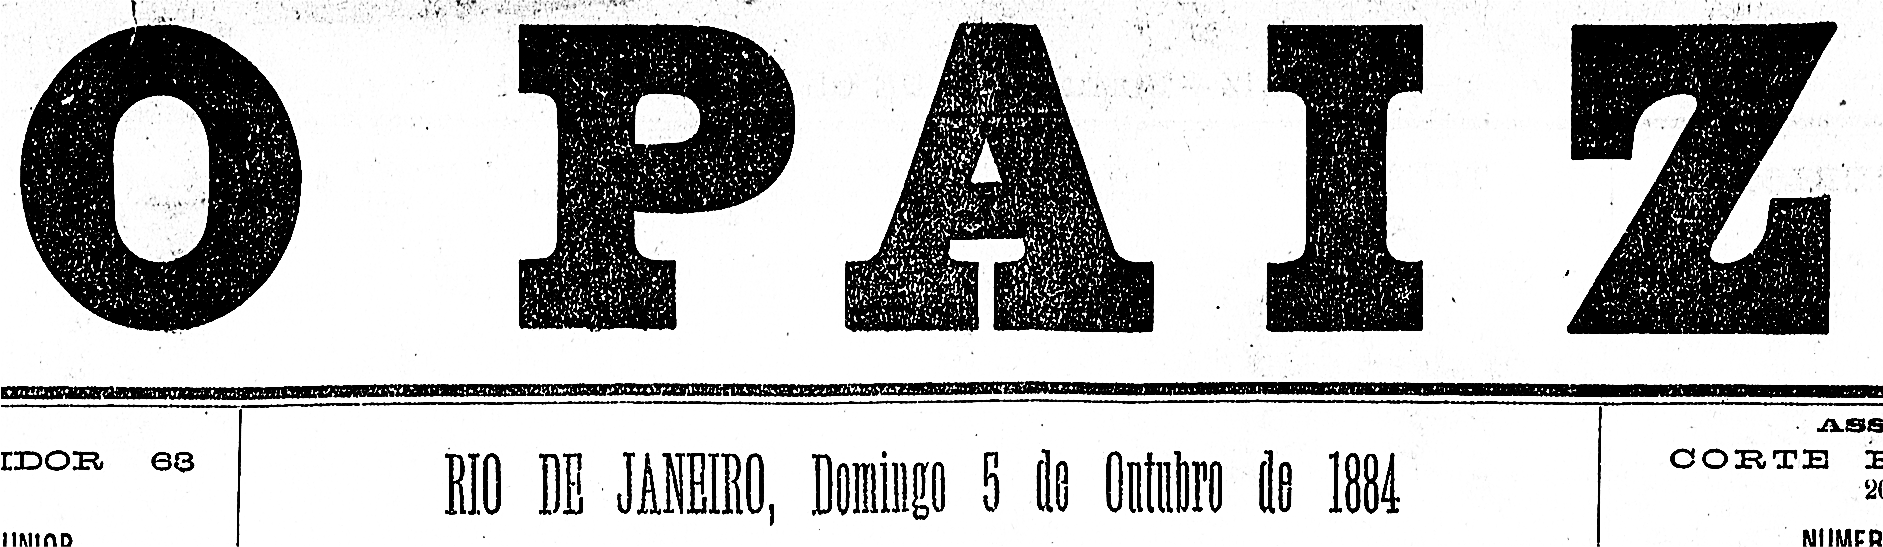 Logotipo d'O Paiz, datado de domingo, 5 de outubro de 1884.